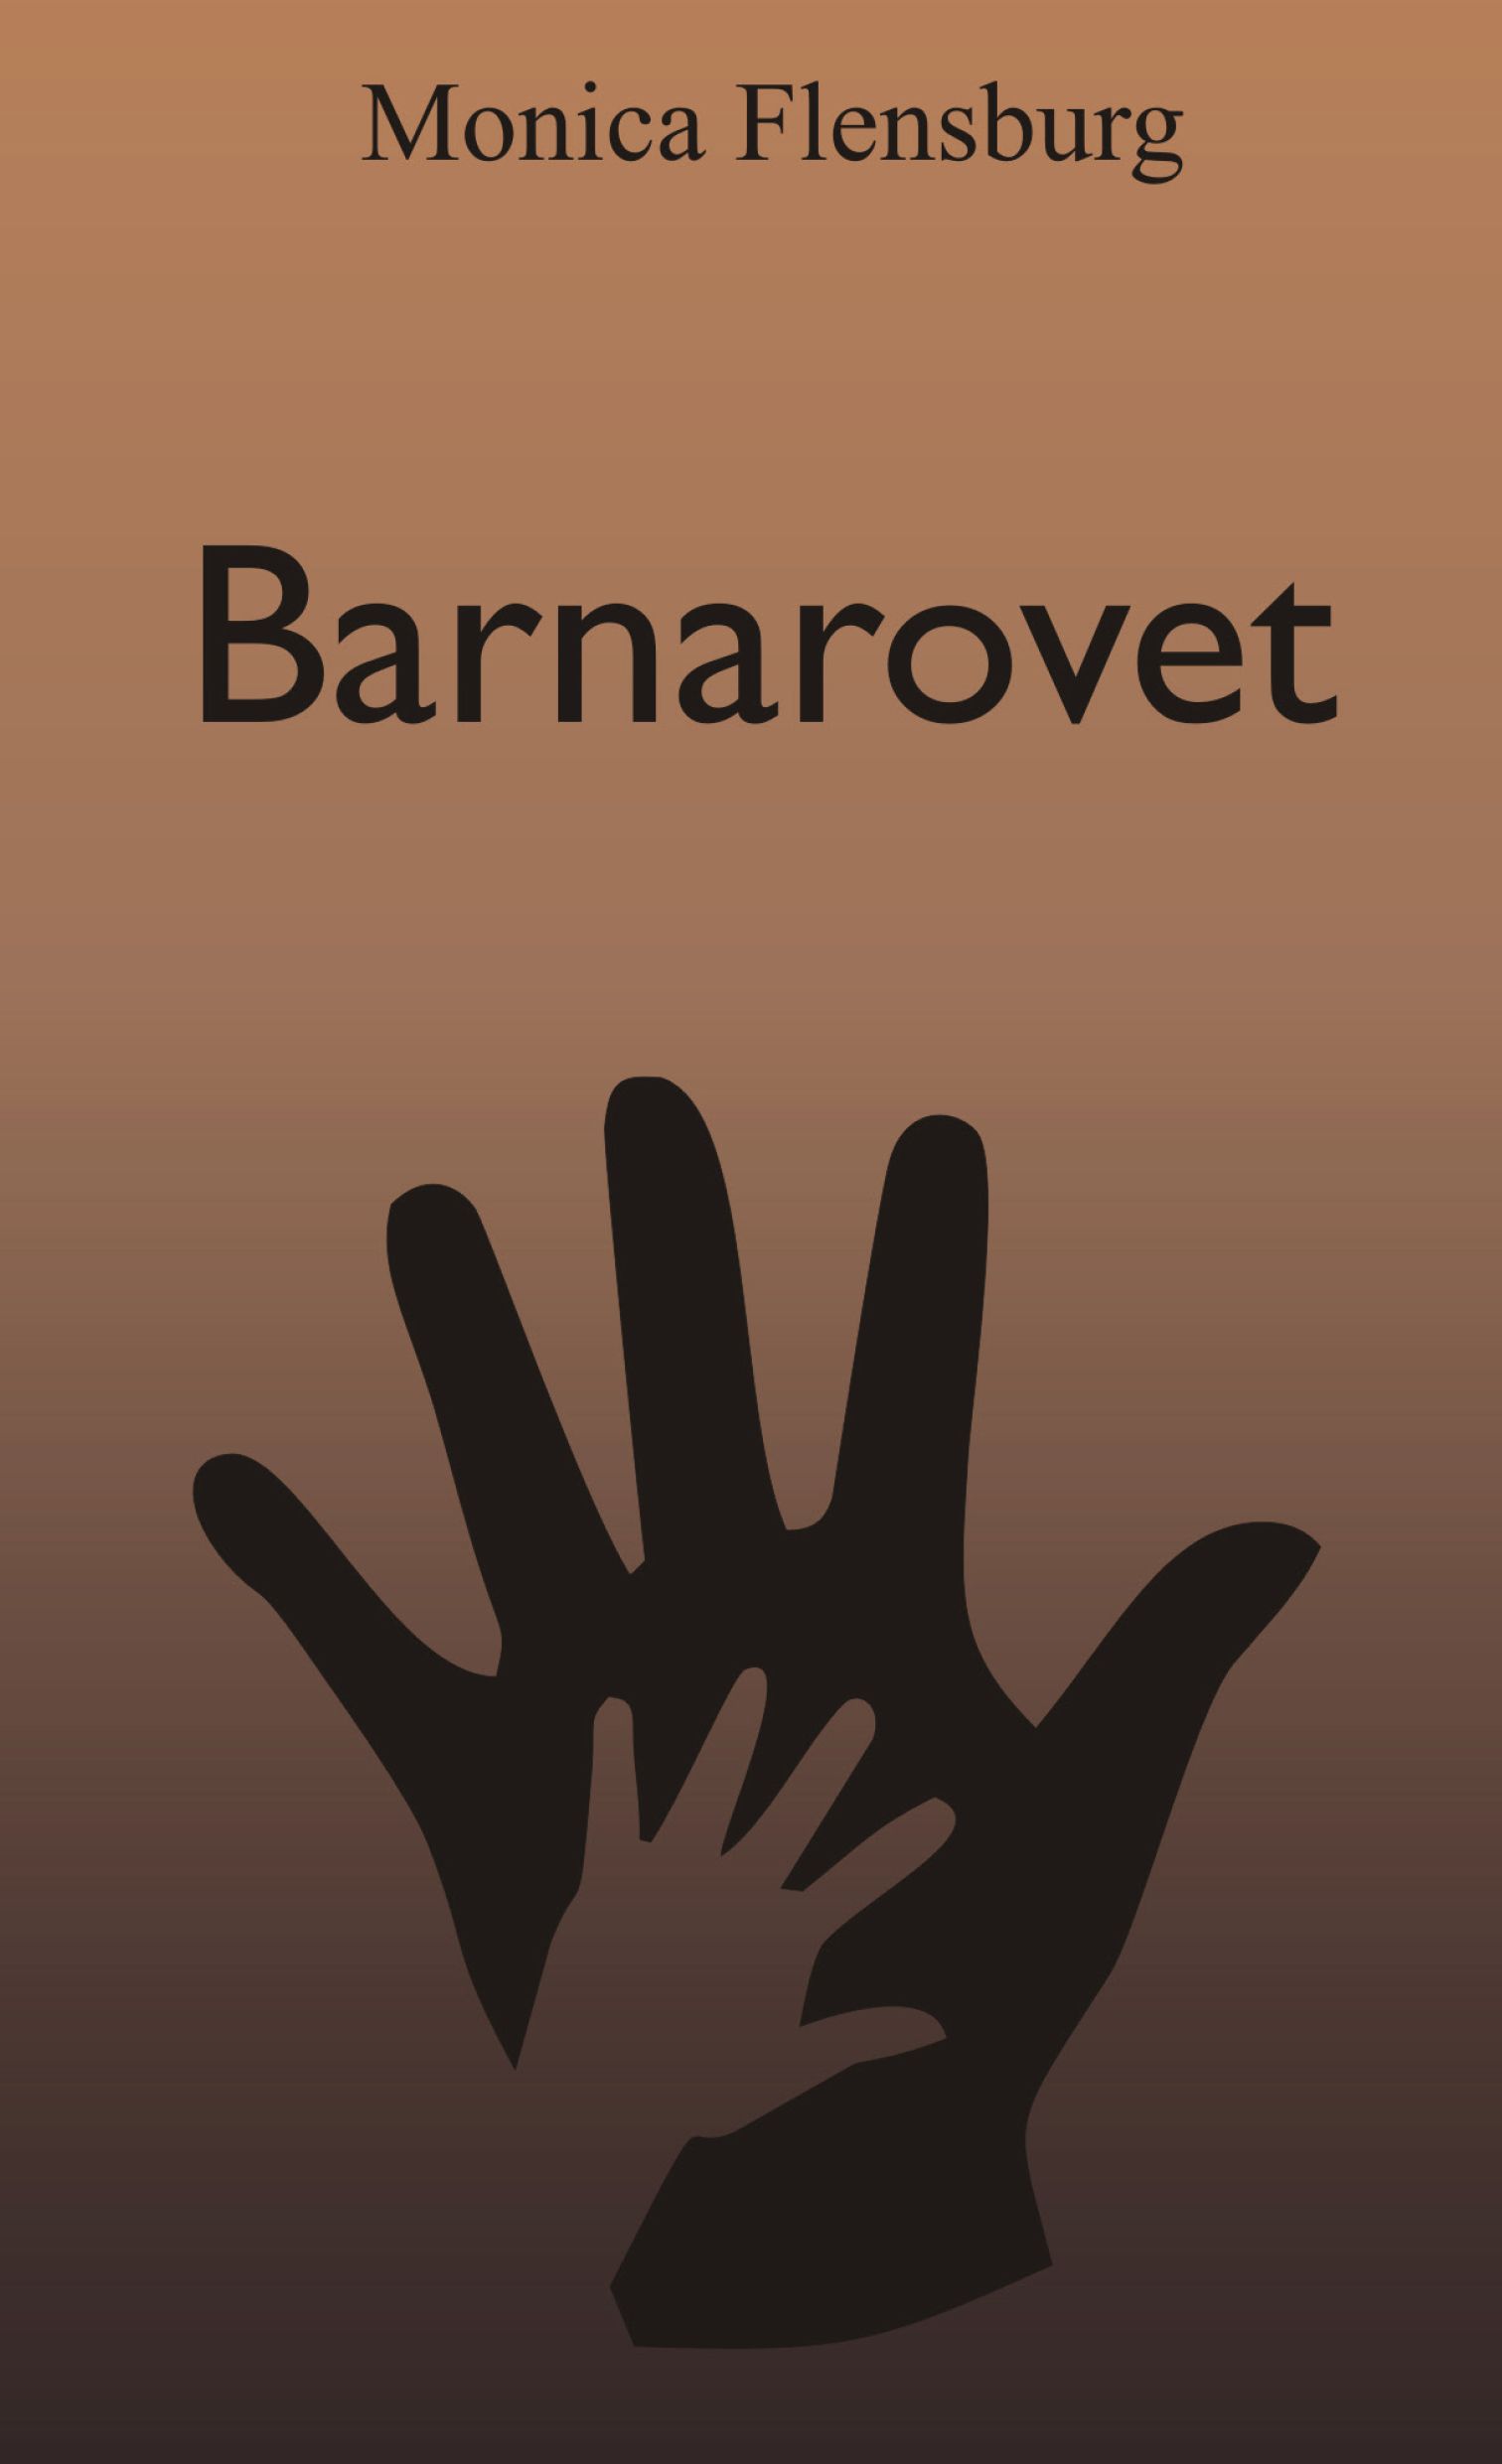 Barnarovet, eBook by Monica Flensburg